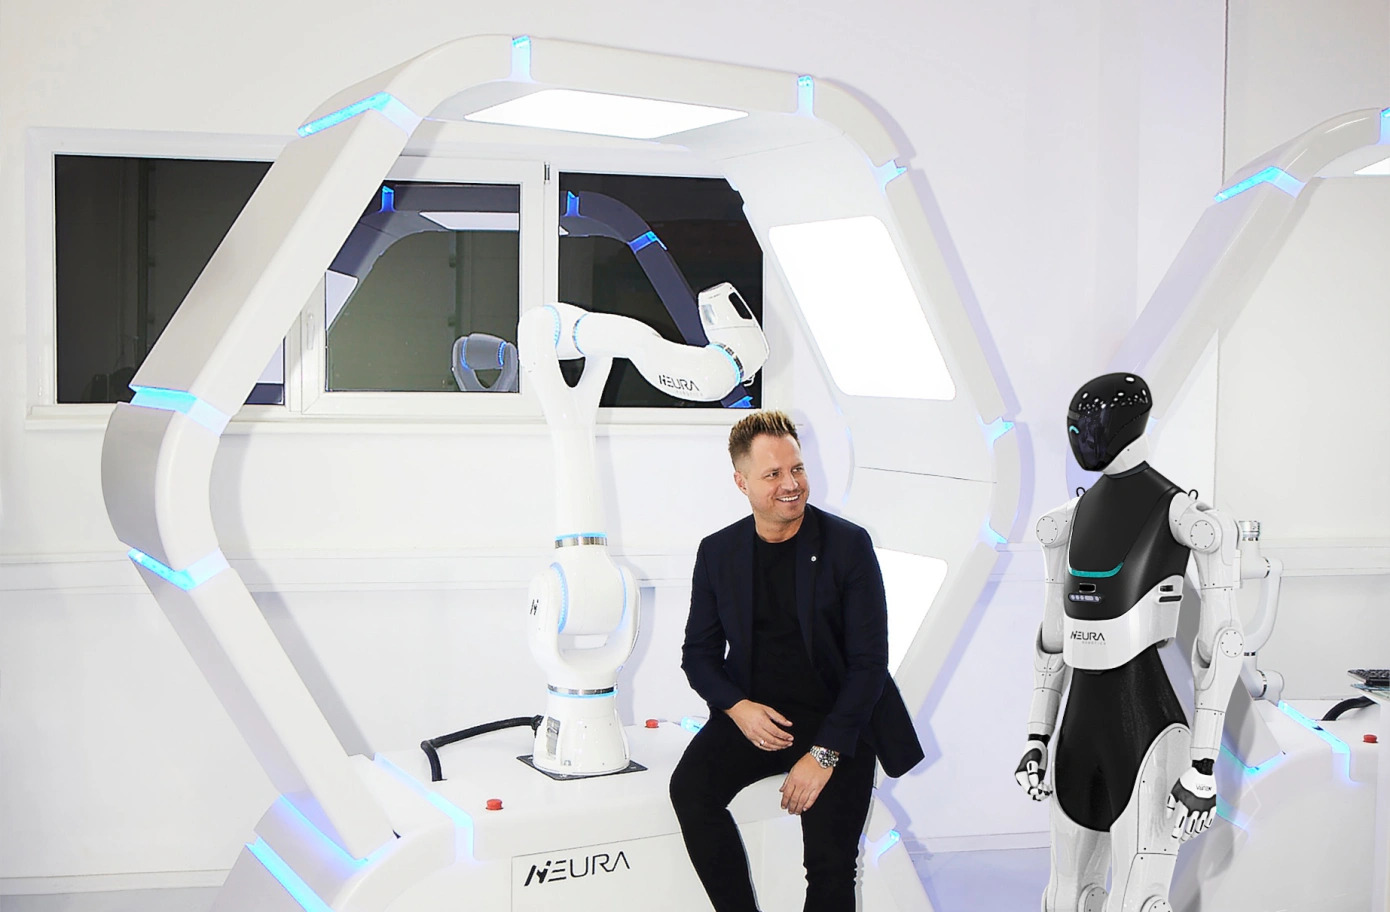 Cette start-up pourrait faire un carton avec ses robots ultra avancés